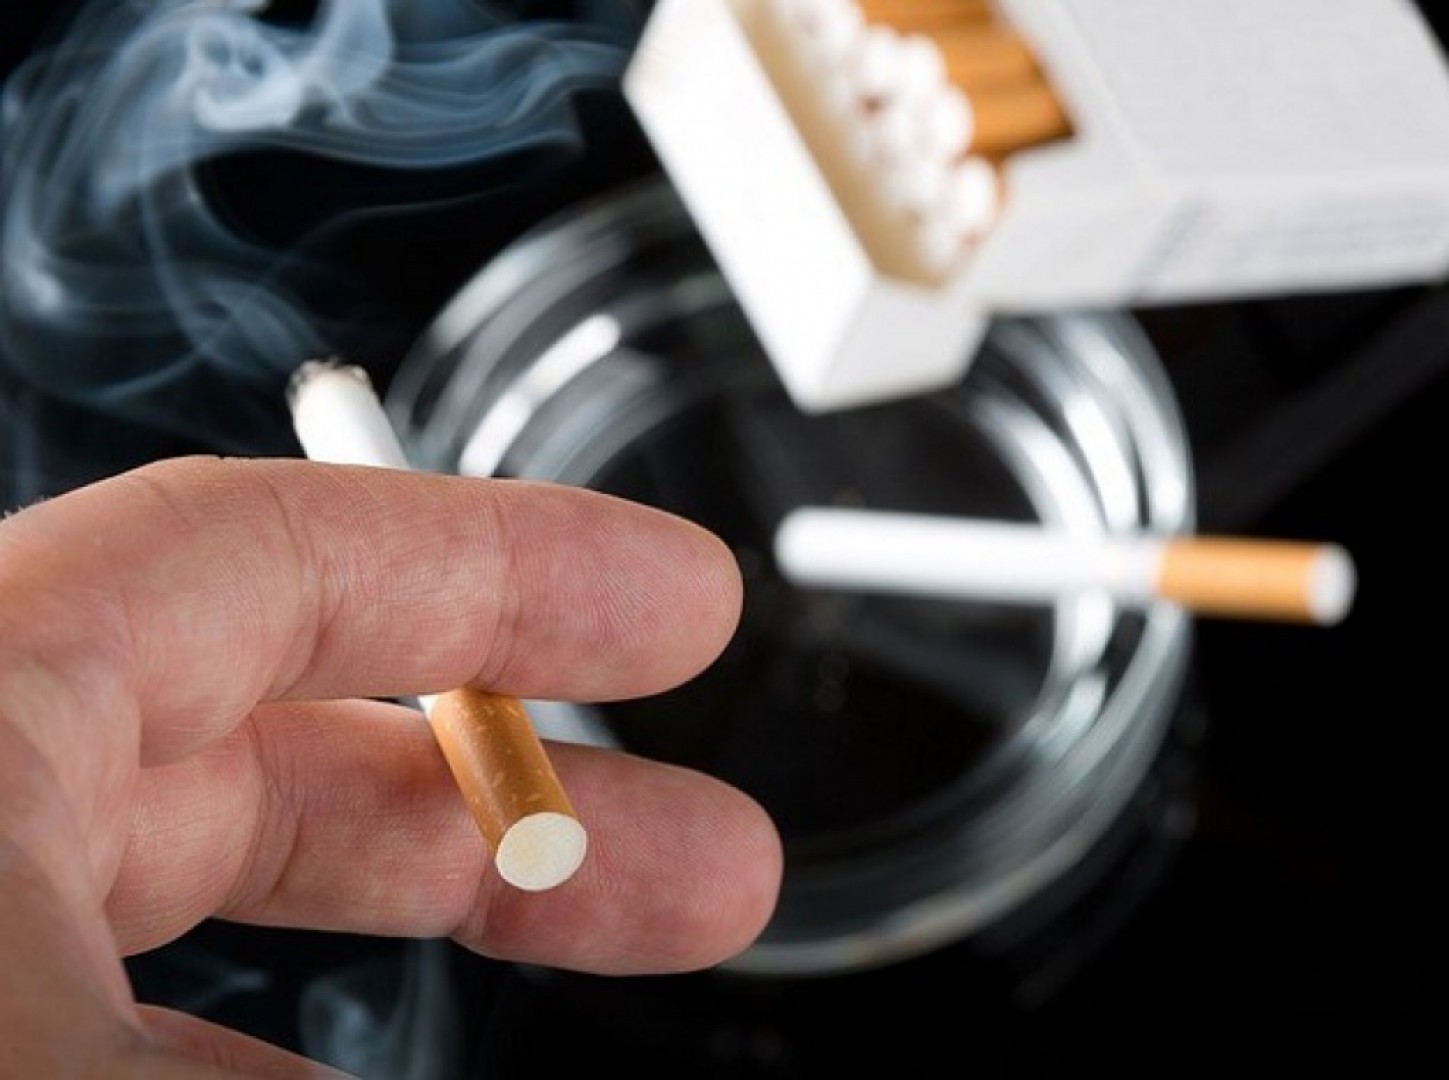 Belgia zakazuje wszelkiej reklamy tytoniu od 2021 r